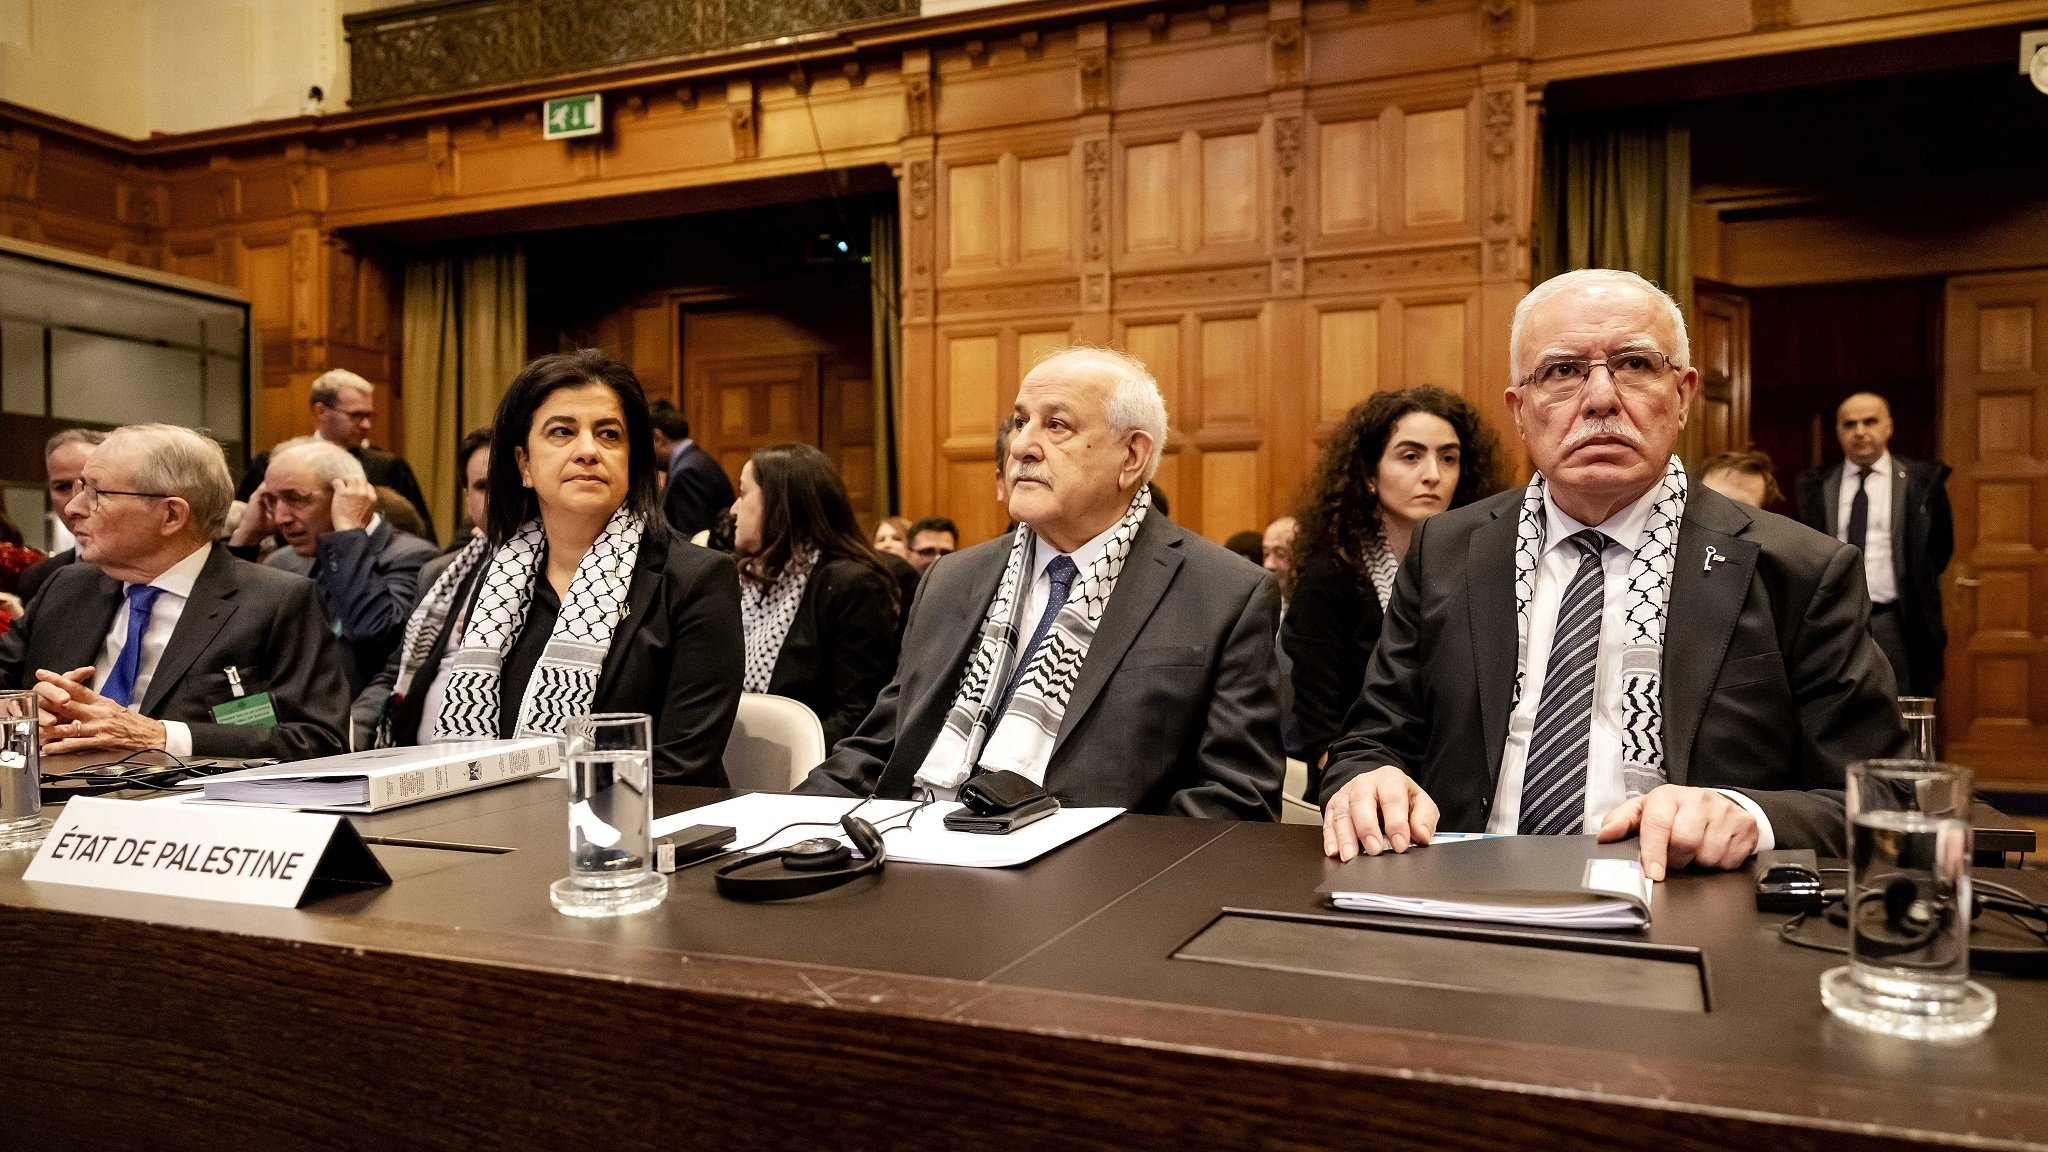 Riad Malki (r), Außenminister der Palästinensischen Autonomiebehörde, während einer Anhörung vor dem IGH über die rechtlichen Konsequenzen der israelischen Besatzung palästinensischer Gebiete